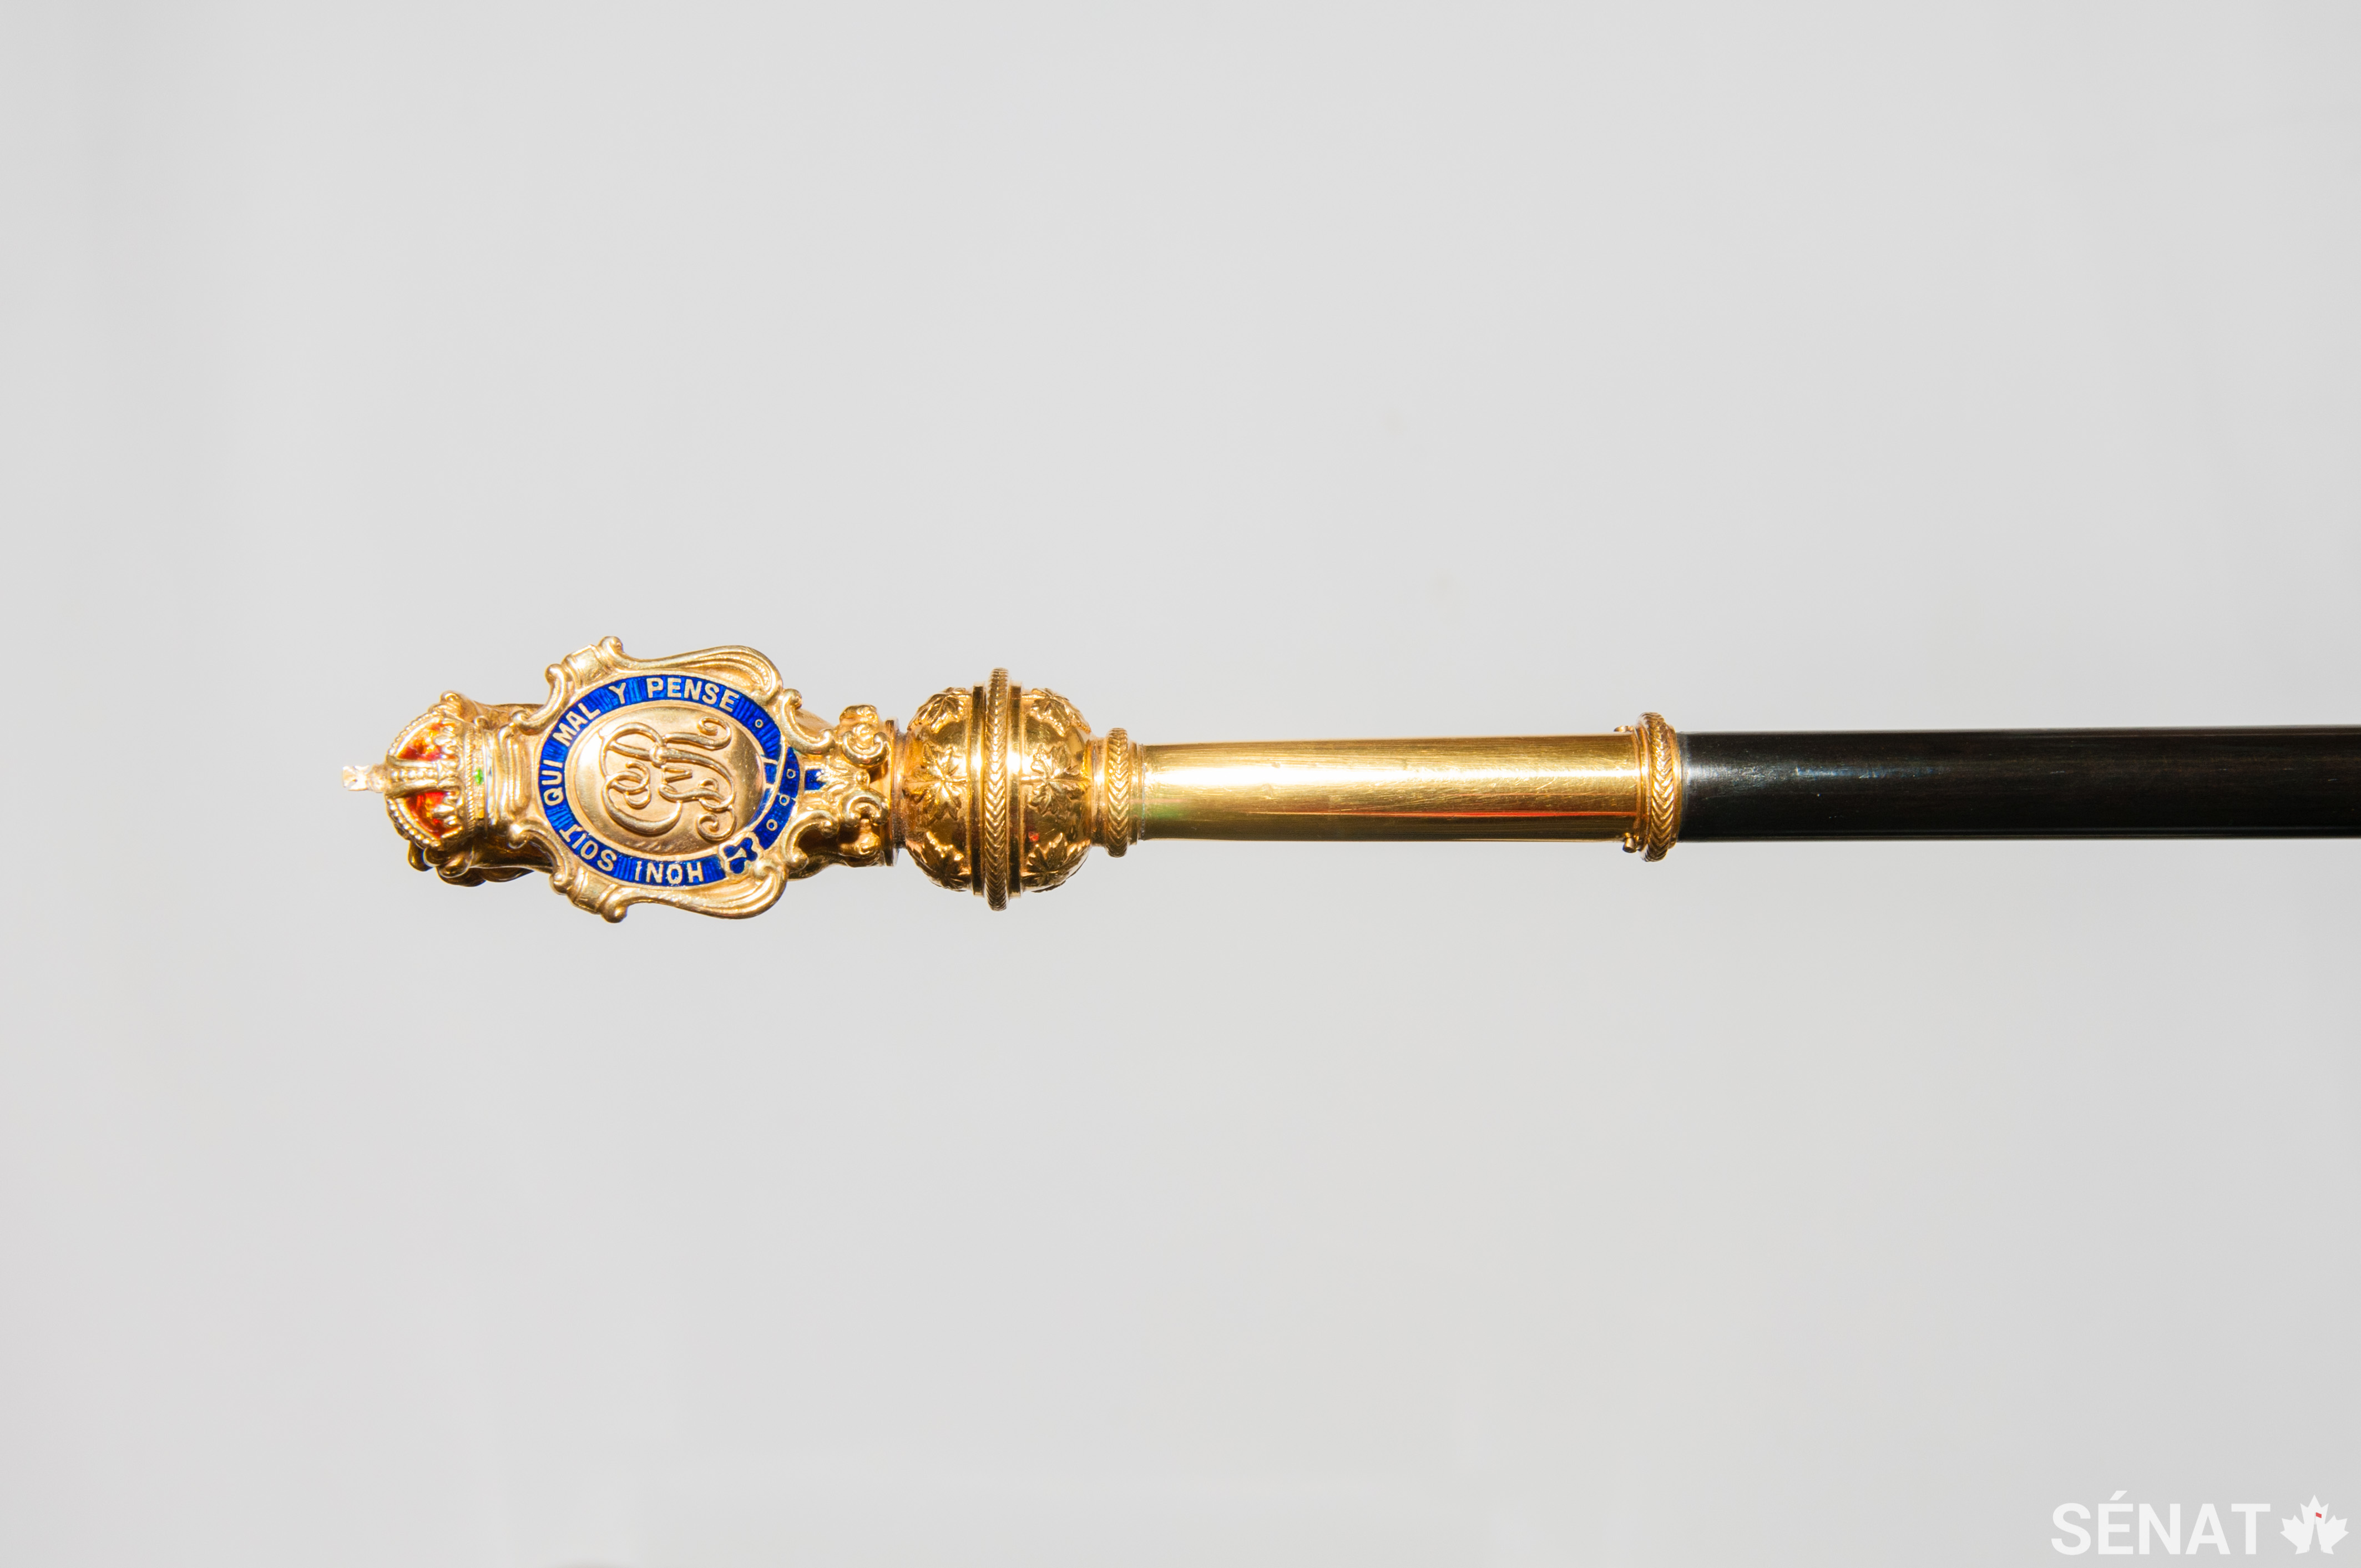 Bien que le bâton noir britannique est décoré du monogramme du roi Édouard VII, le bâton noir canadien est décoré du monogramme du roi Georges V, soit le roi qui régnait à l’époque de sa conception en 1916.